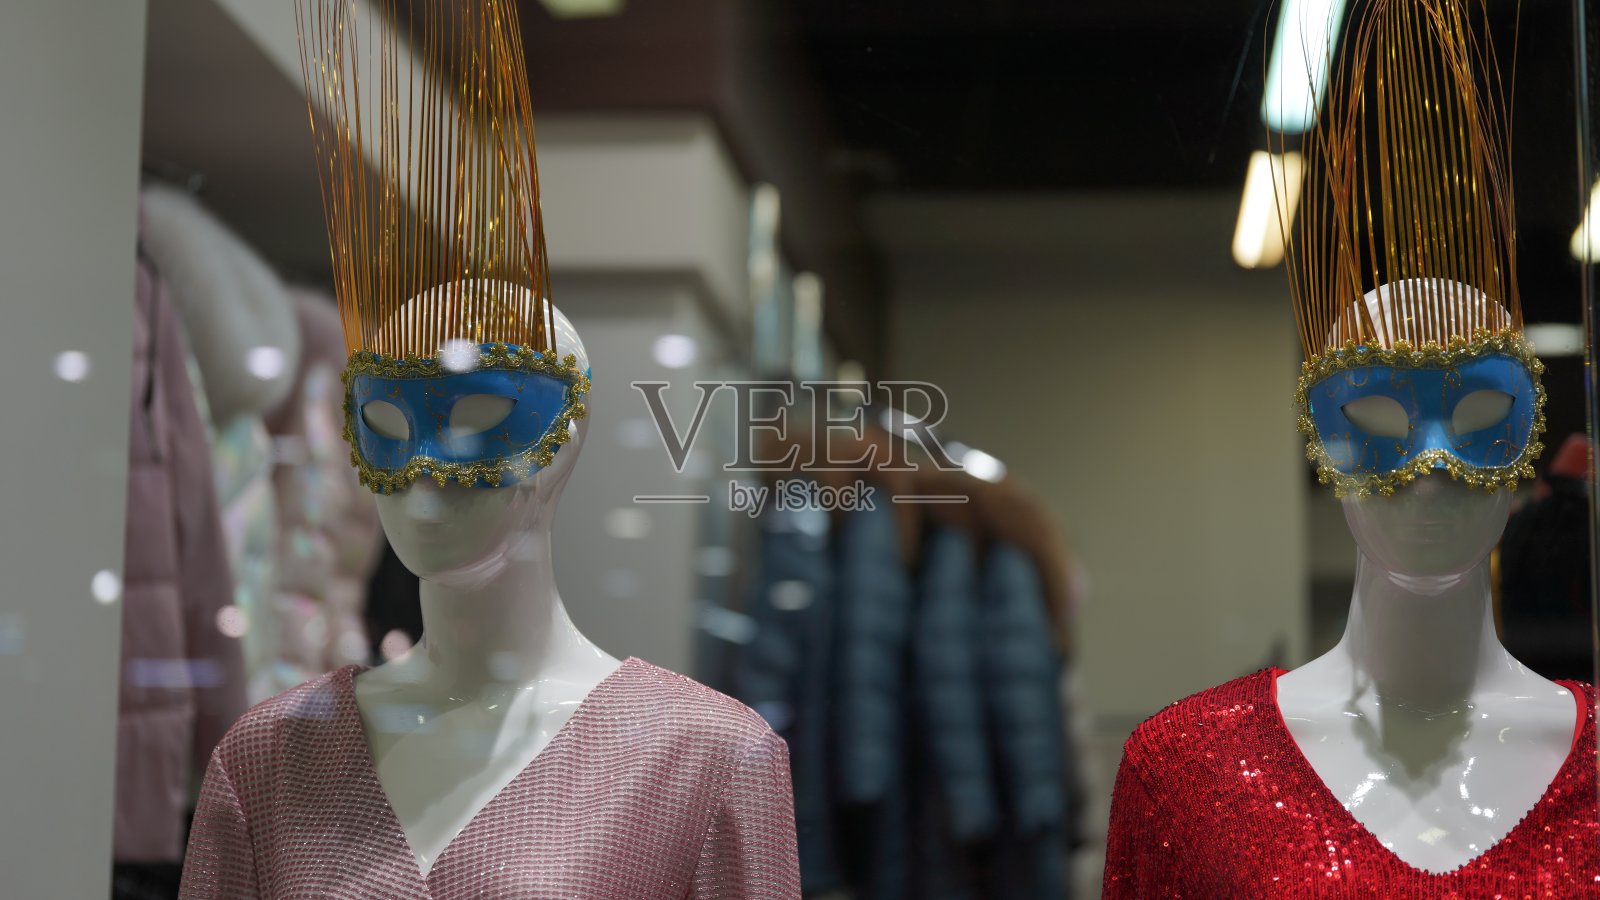 一个人体模特站在一家服装店的橱窗里。服装店概念-展示橱窗中的人体模型照片摄影图片